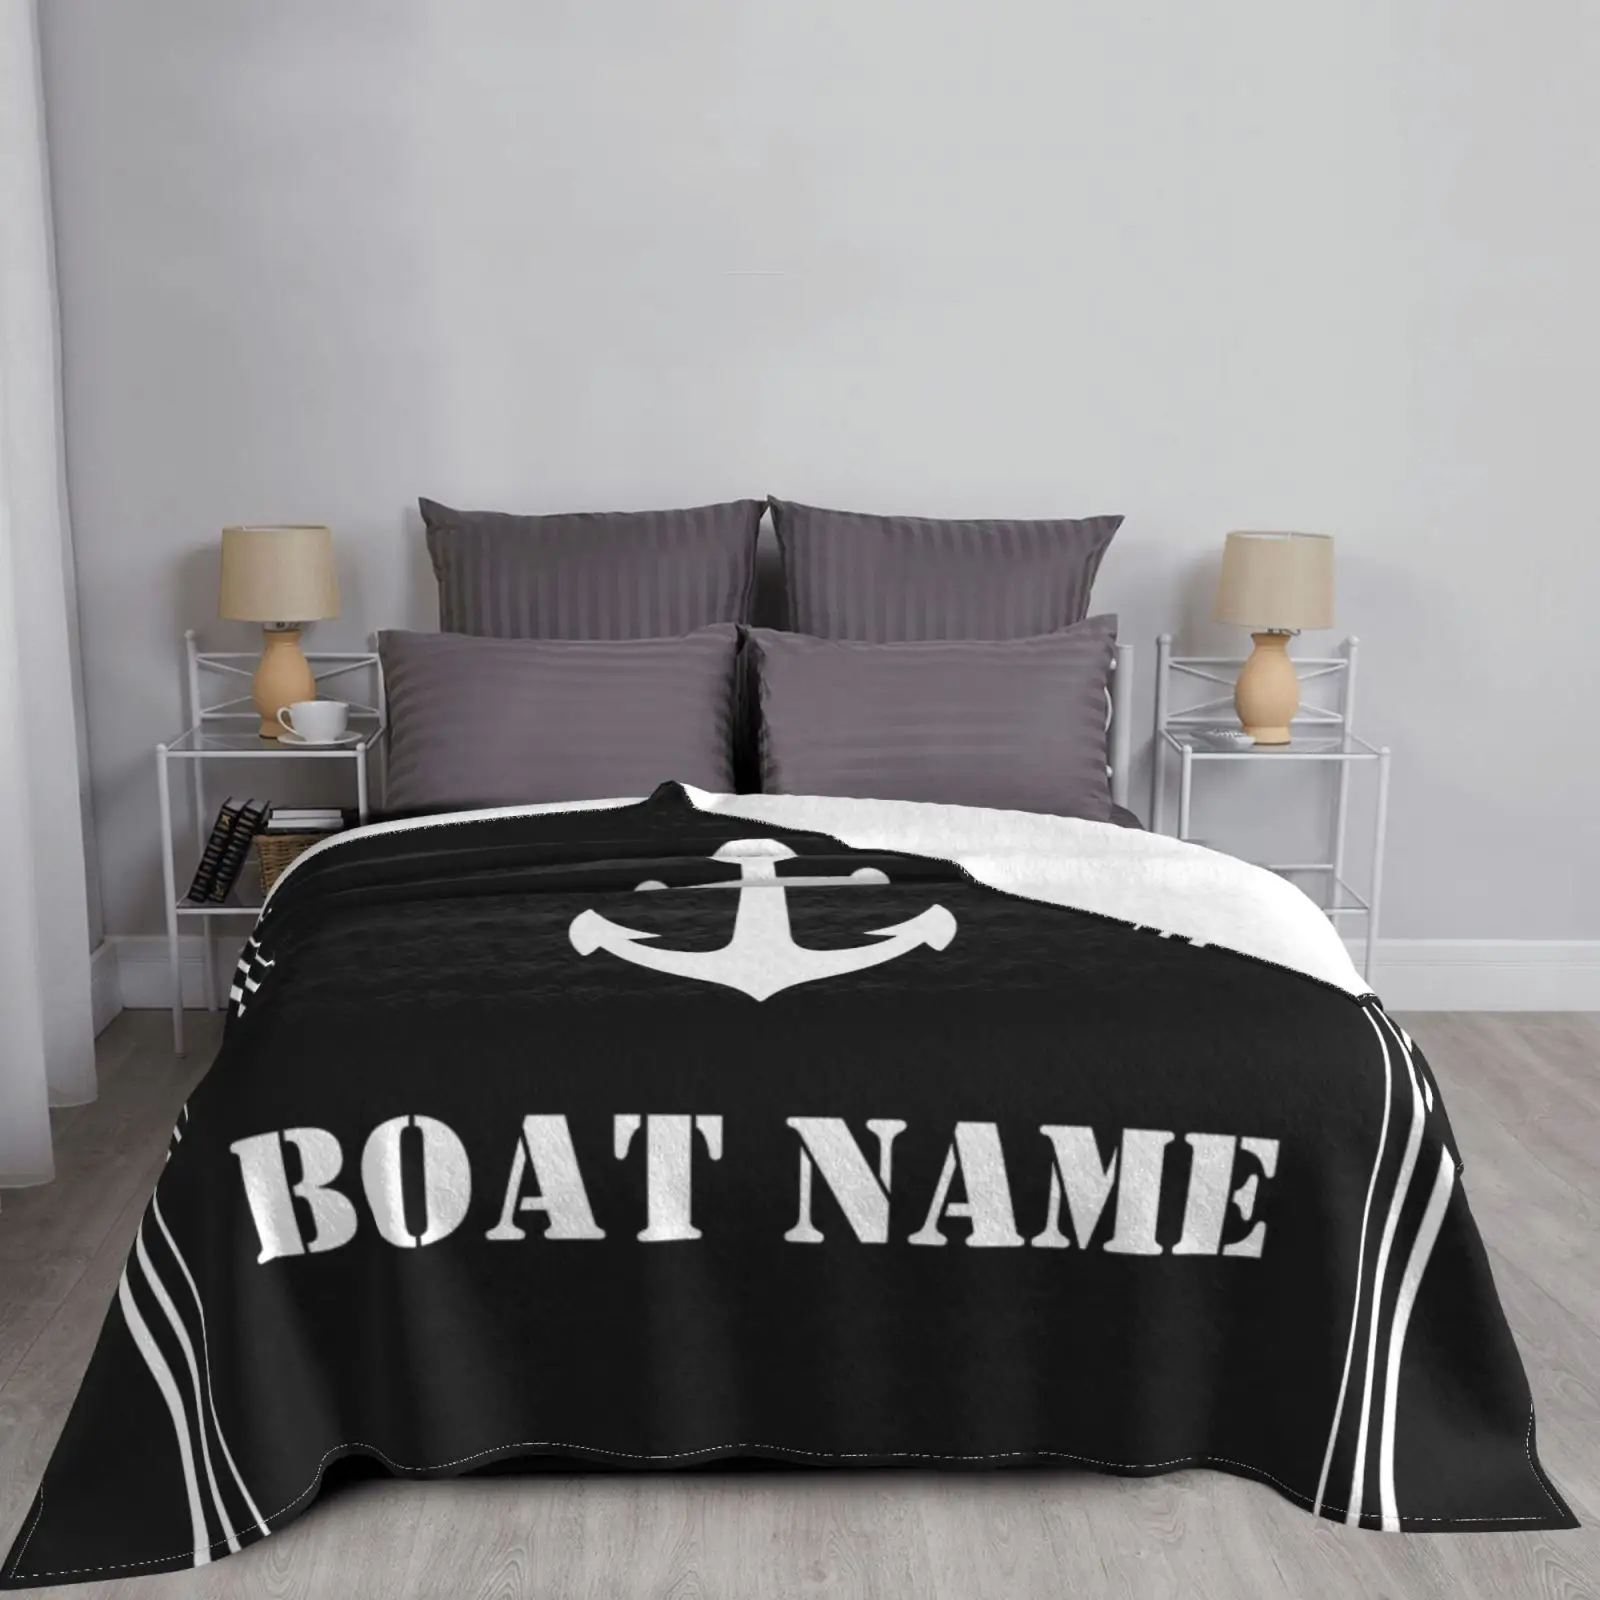 Coperta di ancoraggio per tappezzeria nautica nera coperta morbida in flanella personalizzabile biancheria da letto termica traspirante e coperta da viaggio